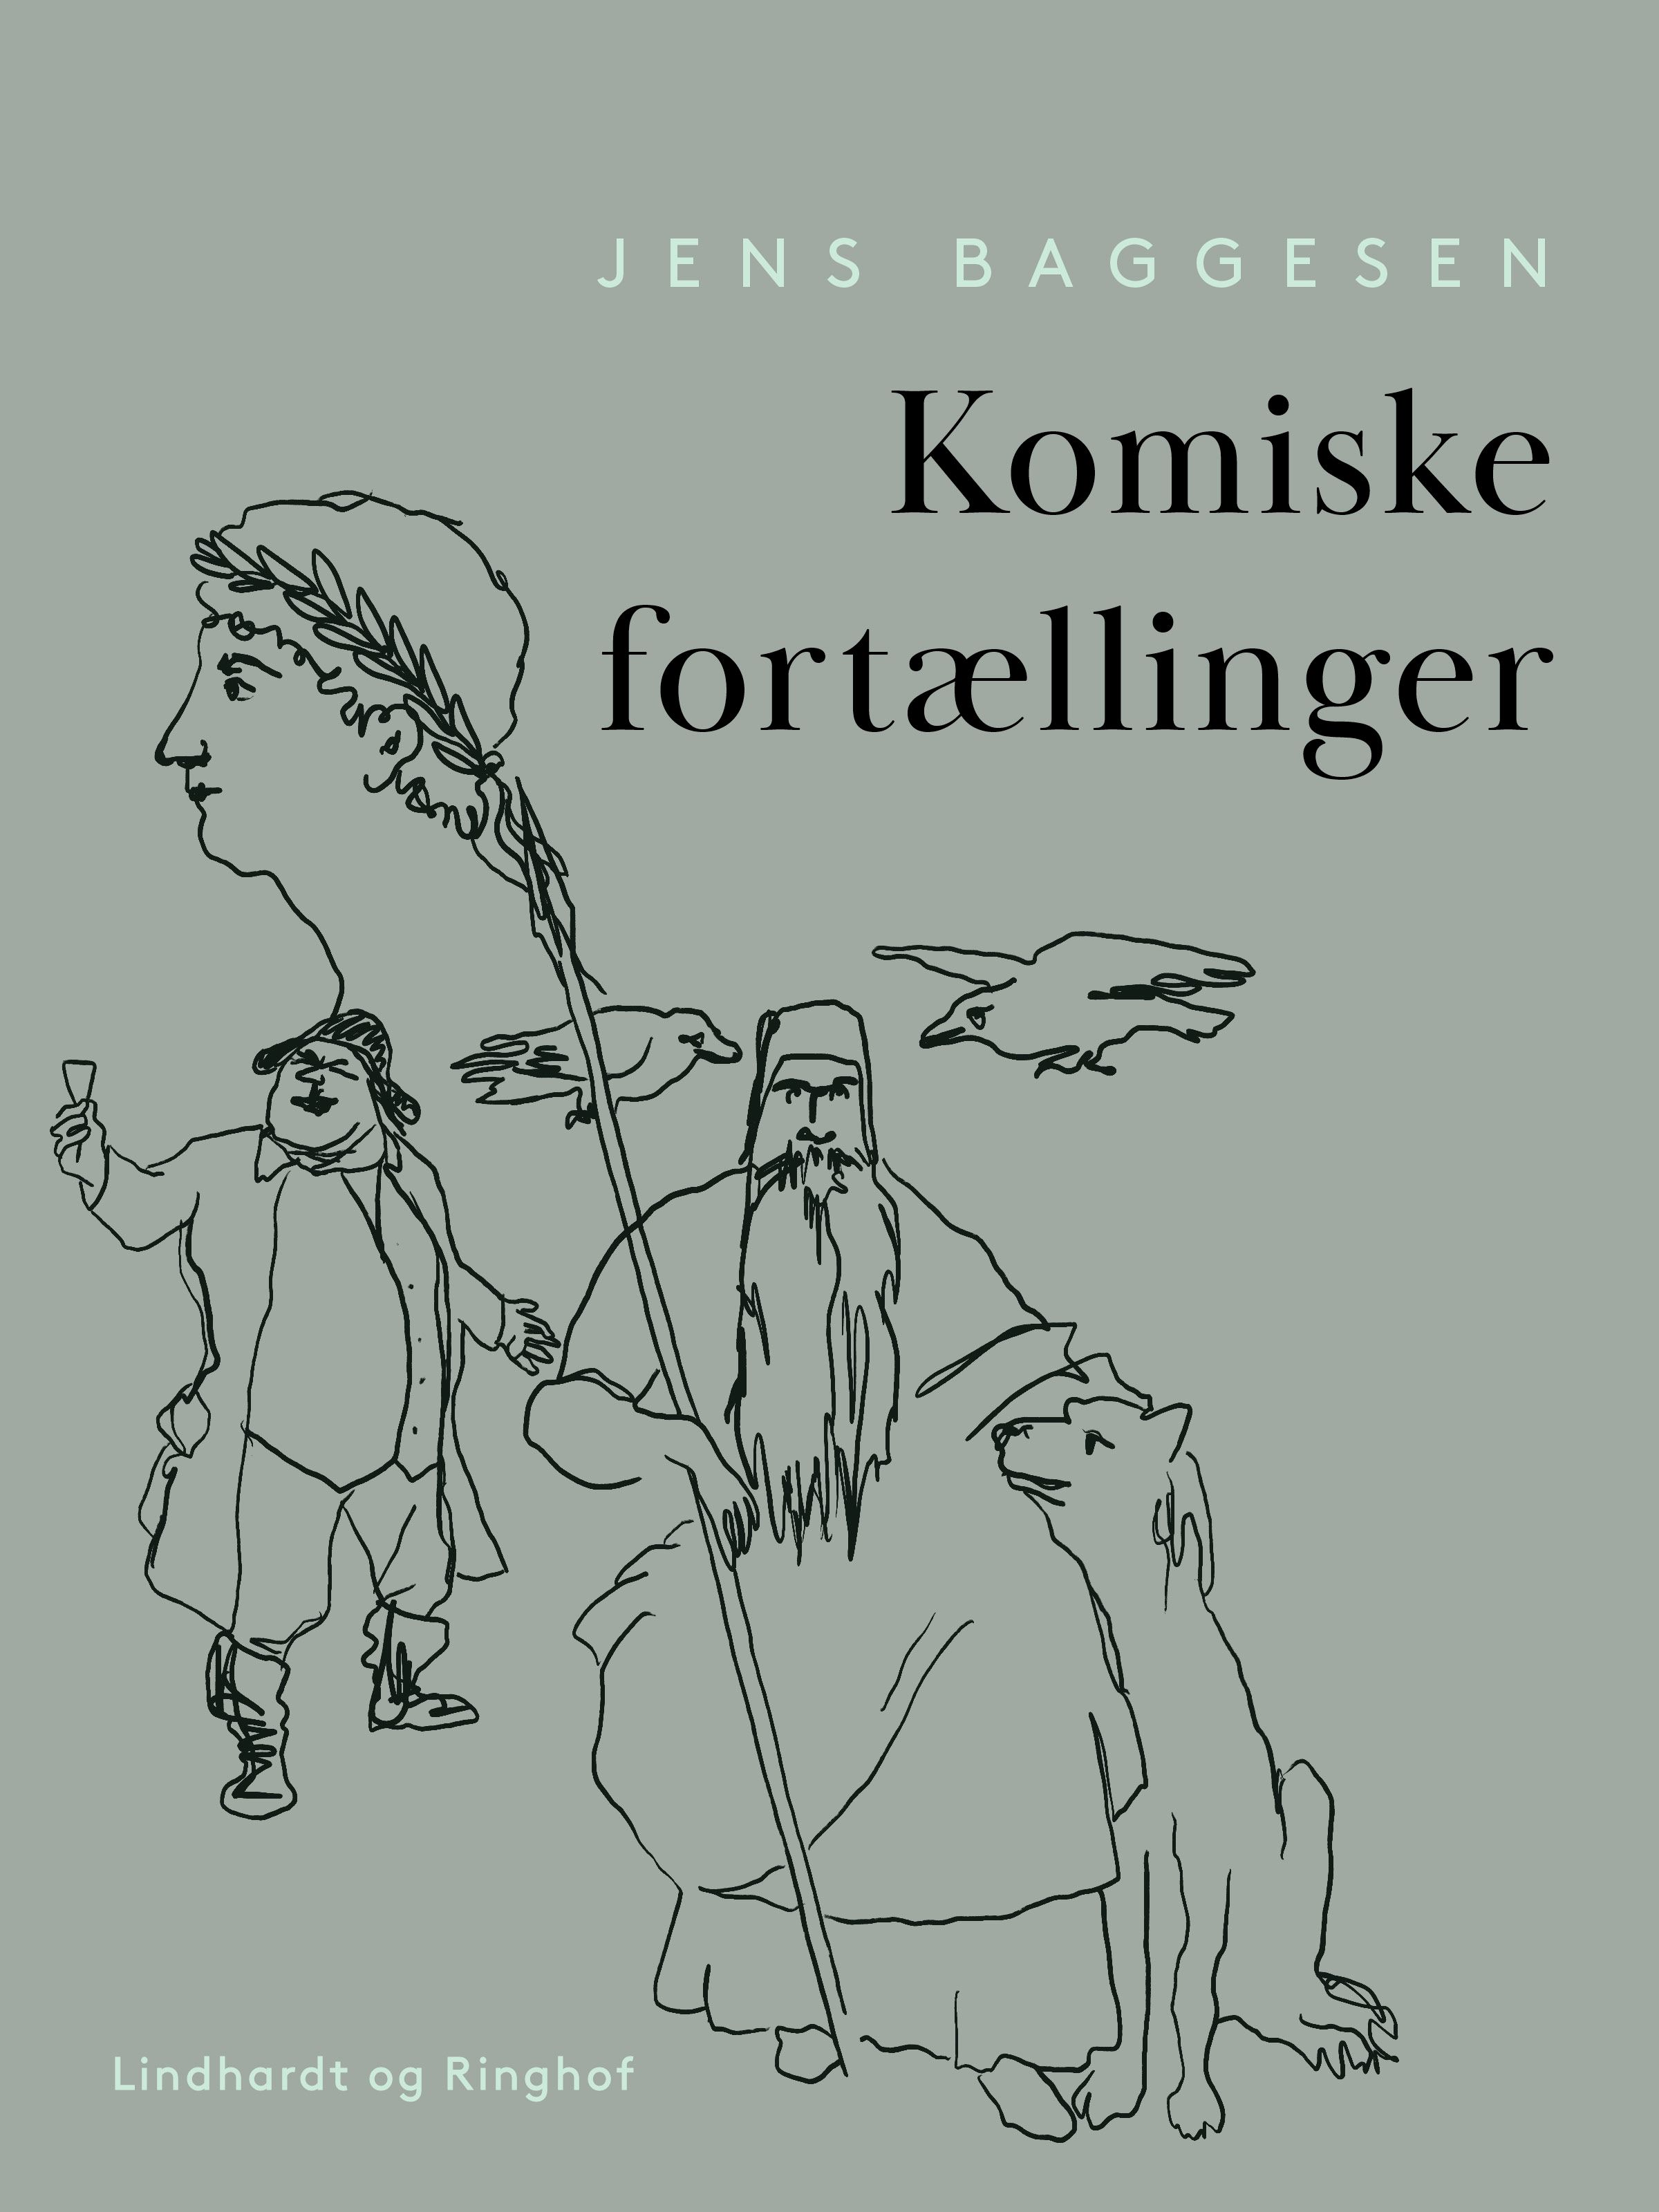 Komiske fortællinger, e-bok av Jens Baggesen